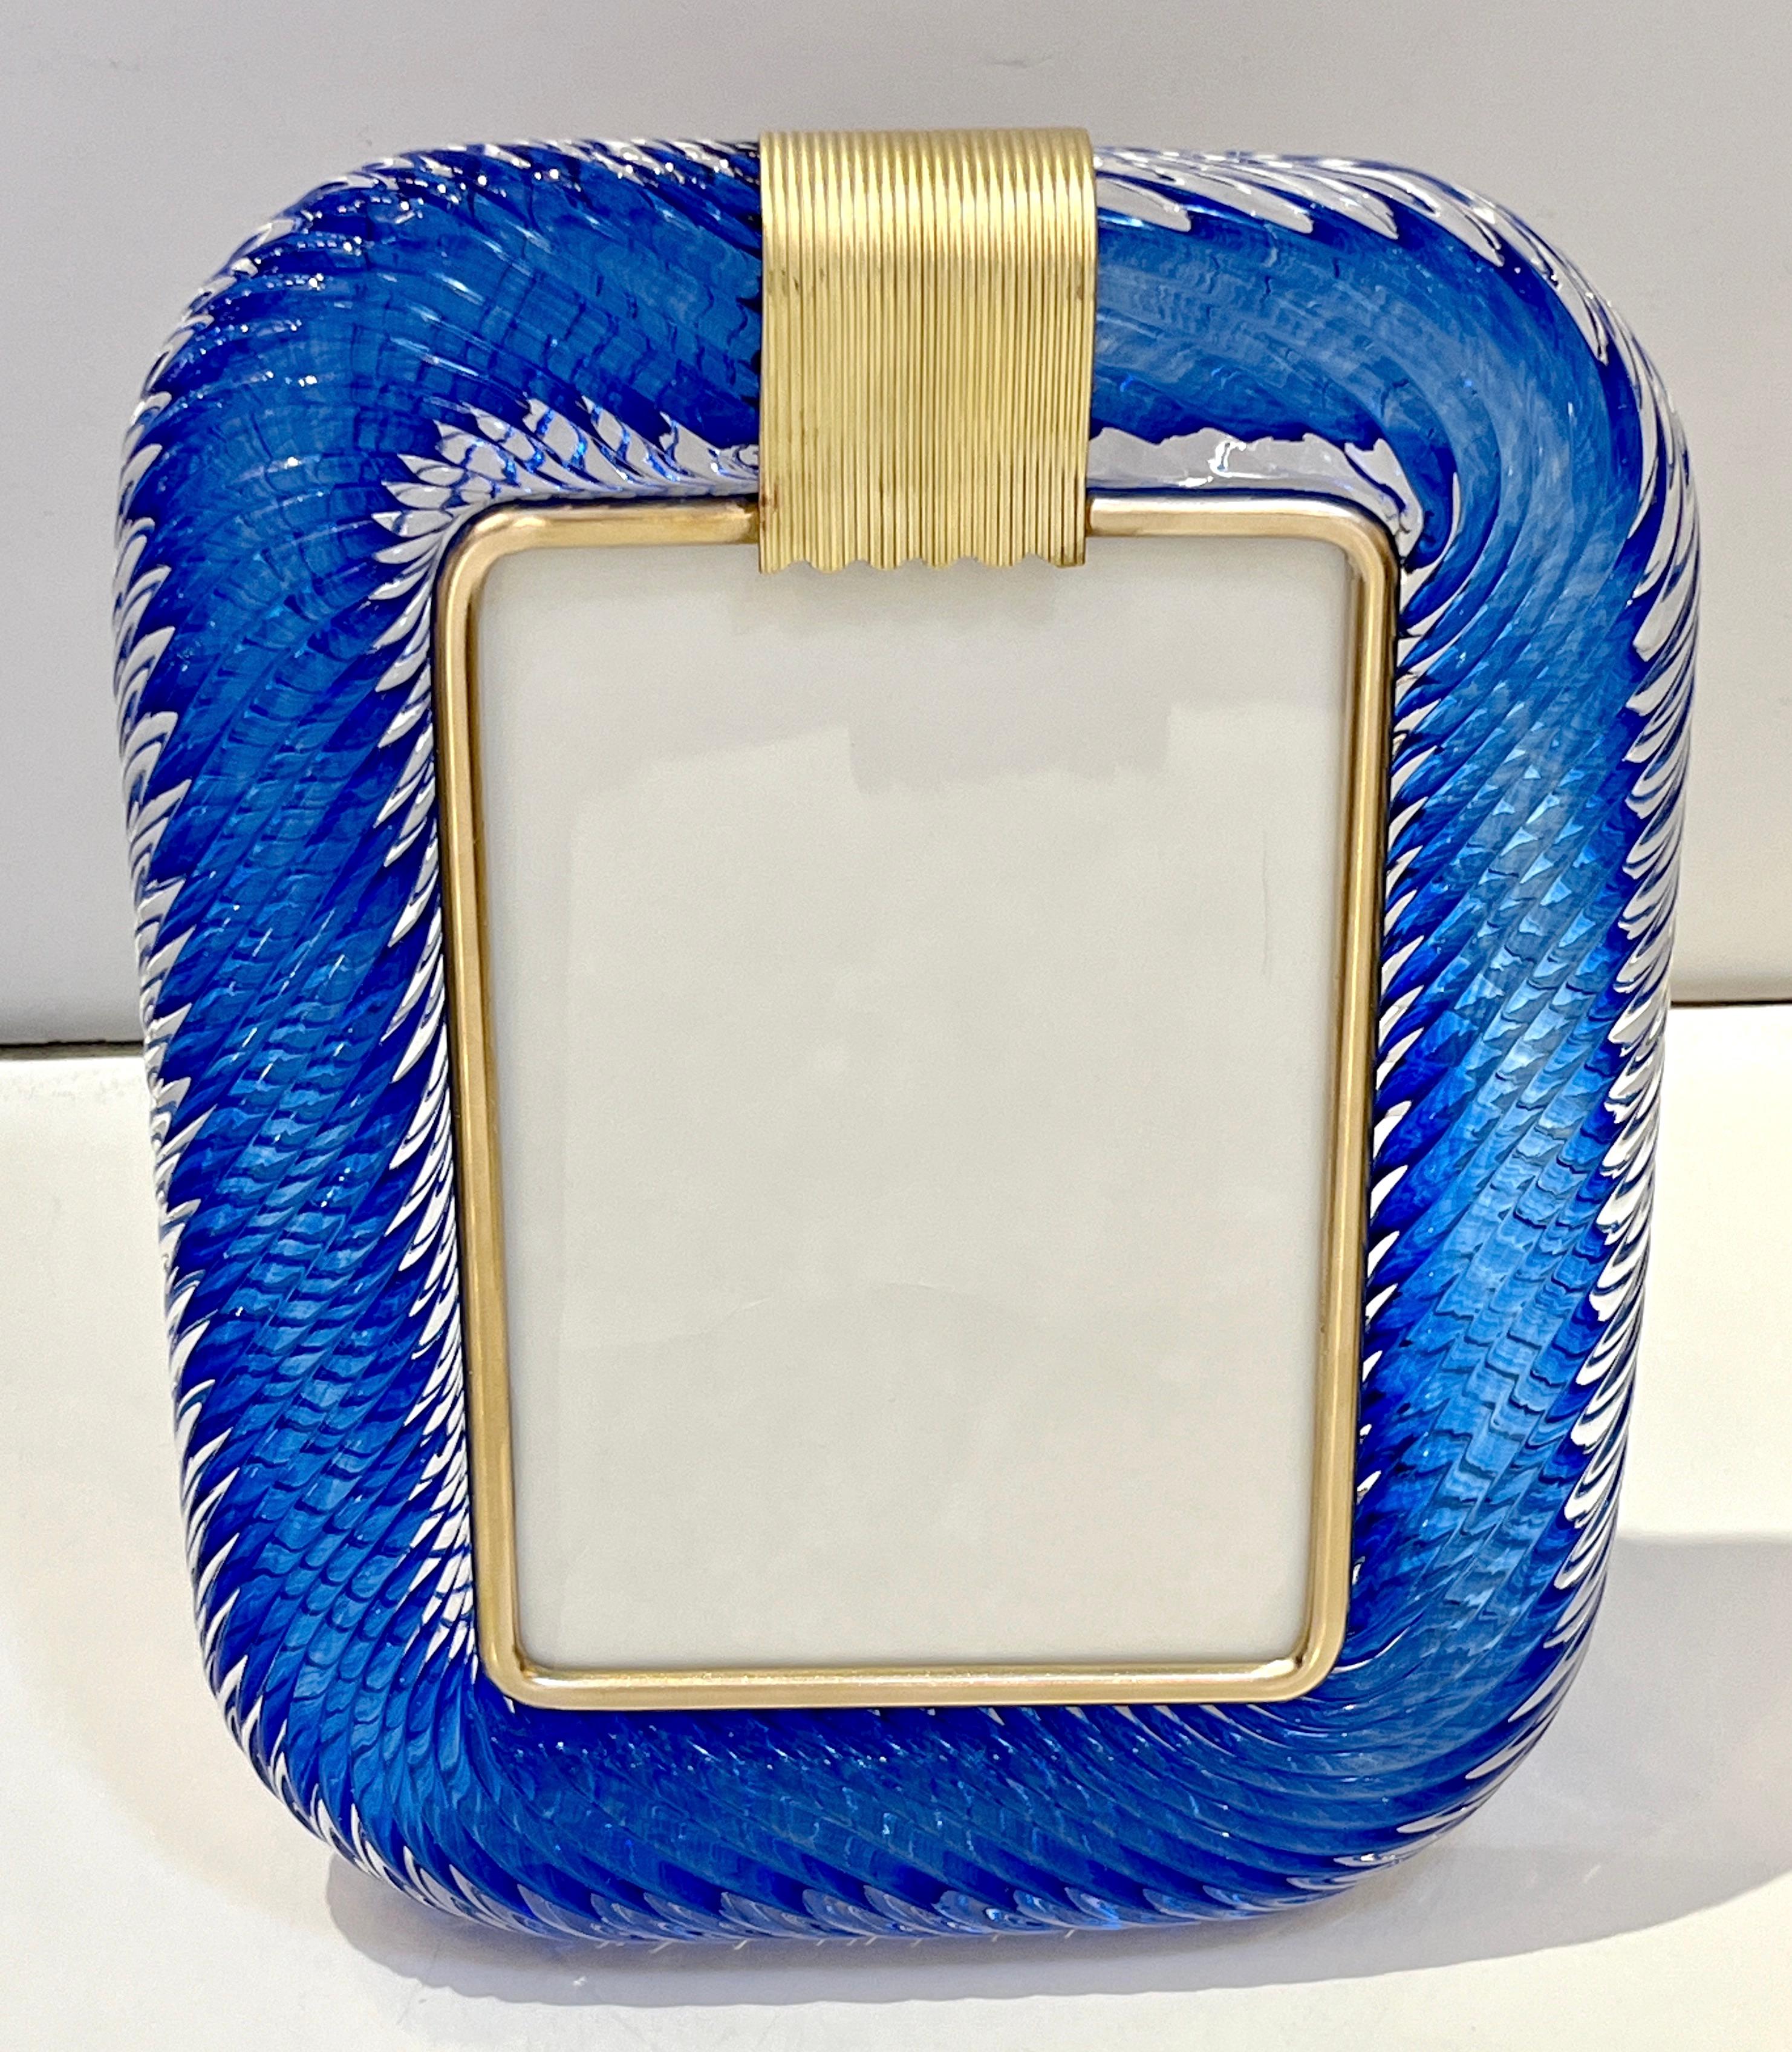 Ein raffinierter vertikaler Fotorahmen im modernen venezianischen Design aus dickem mundgeblasenem Murano-Glas in einem satten, tiefblauen Juwel, von Barovier Toso, signiertes Stück. Die elegante Textur des eng gedrehten Glasrahmens in hochwertiger